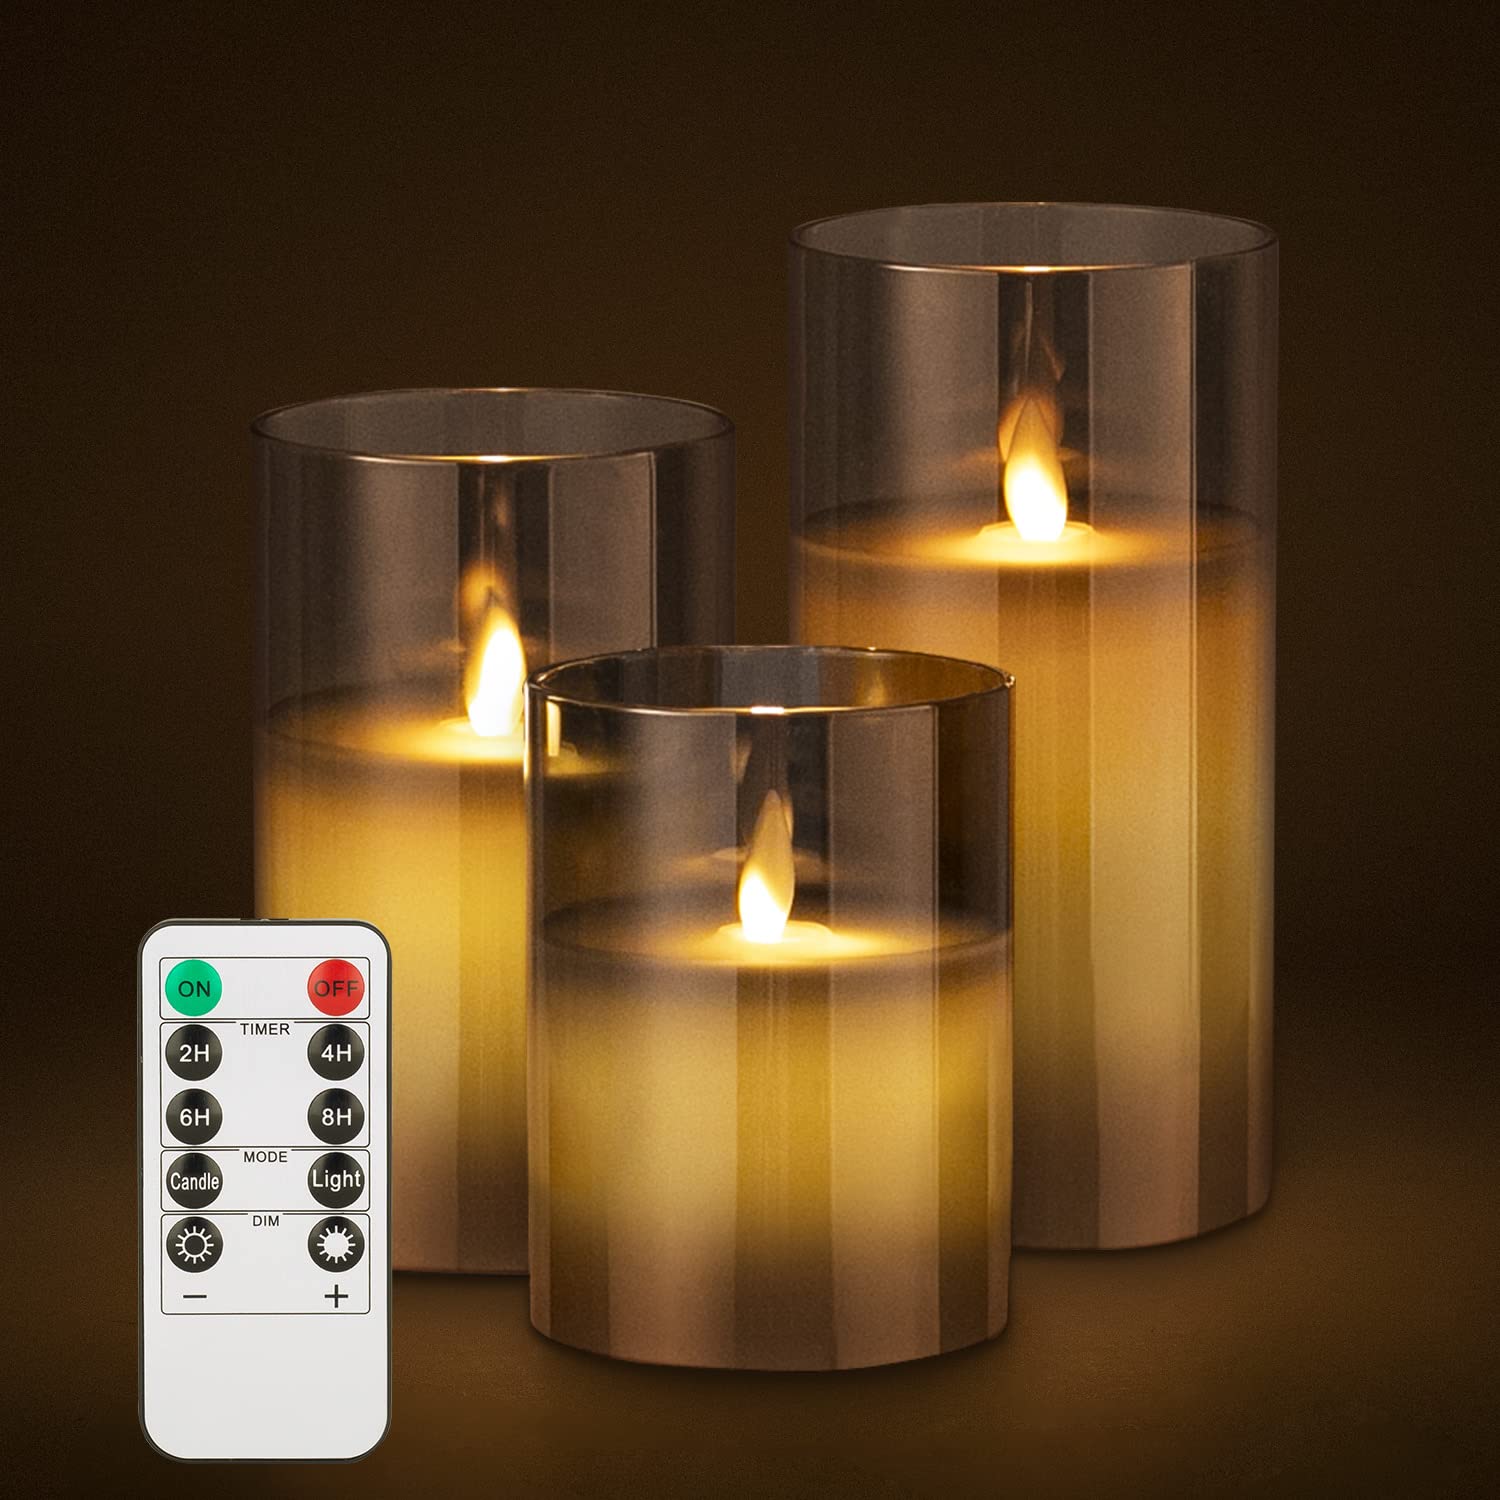 Aircover LED Kerzen, 3er Set LED Flammenlose Kerze mit Fernbedienung & Timerfunktion, 10cm, 12,5cm,15cm Hoch Batteriebetriebene Wachslicht, Realistisch Flackernde Licht Graue Glas Deko Kerzenlicht